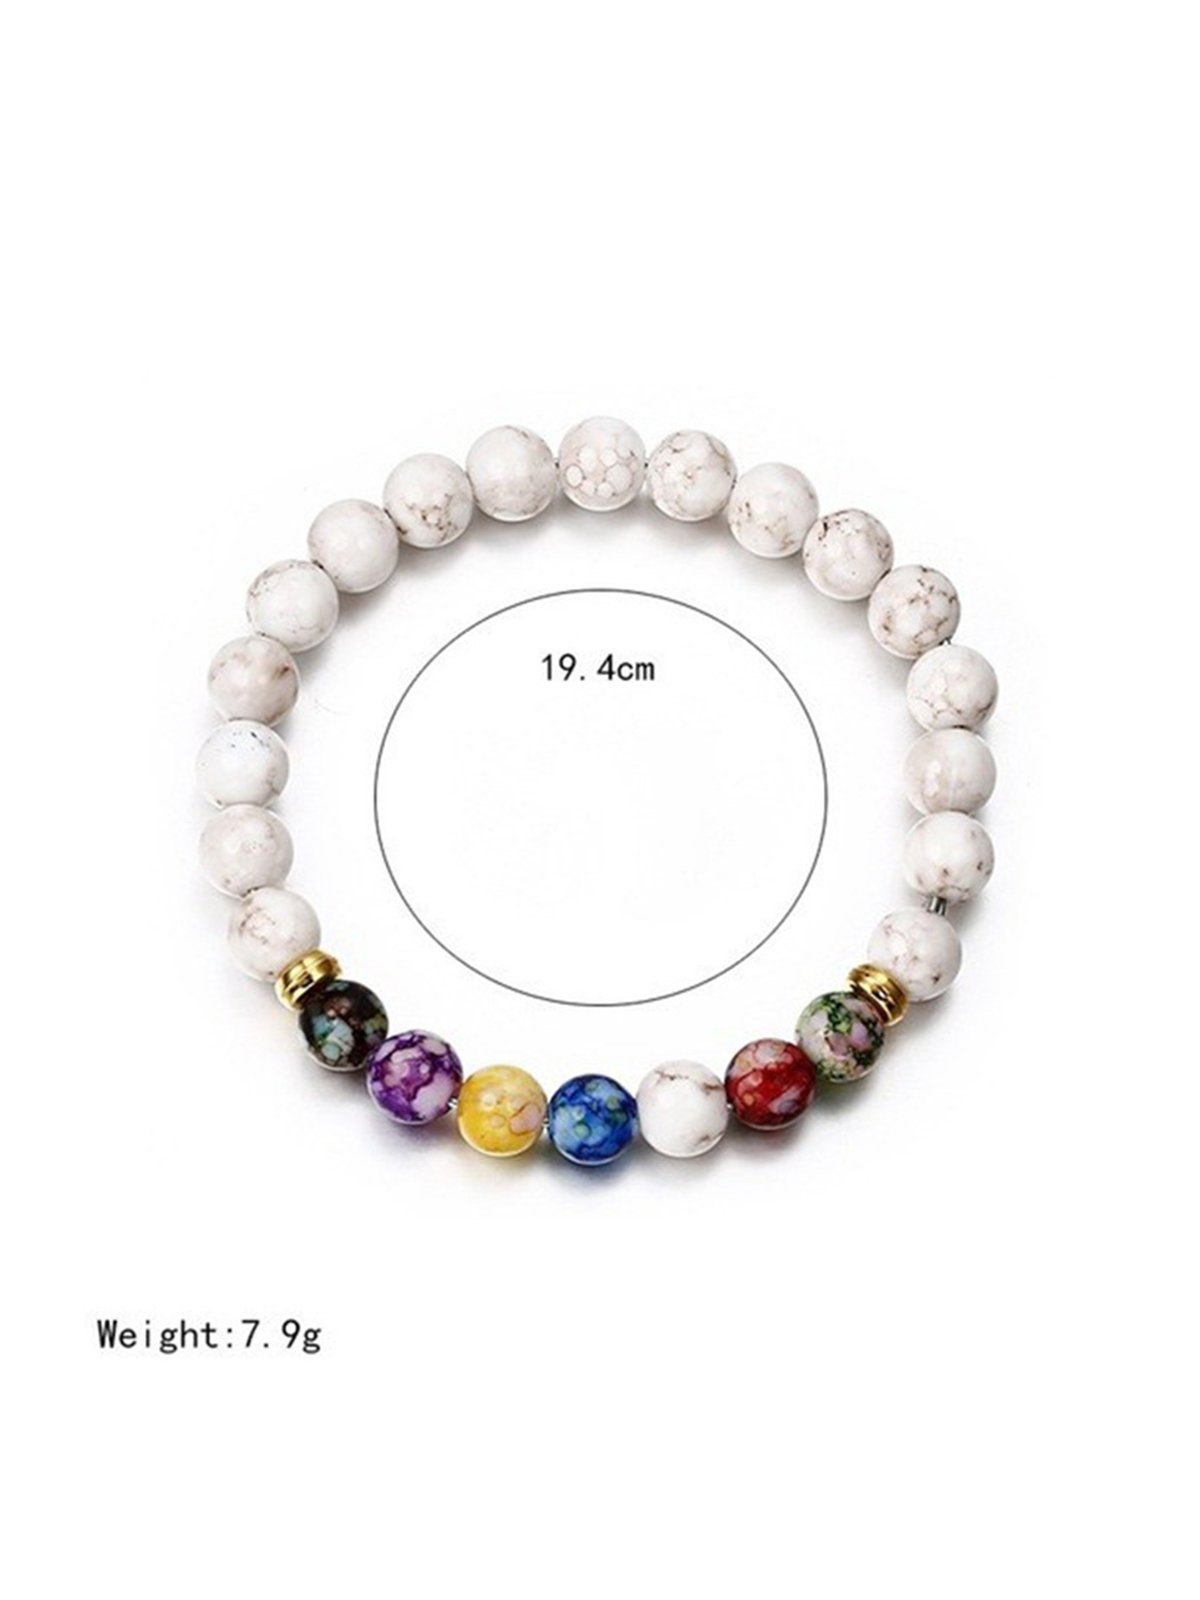 Bracelet Vintage Bloc de Couleur Toutes les Saisons Quotidien Perles Cristal Plage Style Chaîne Bracelets Cristal pour Femme